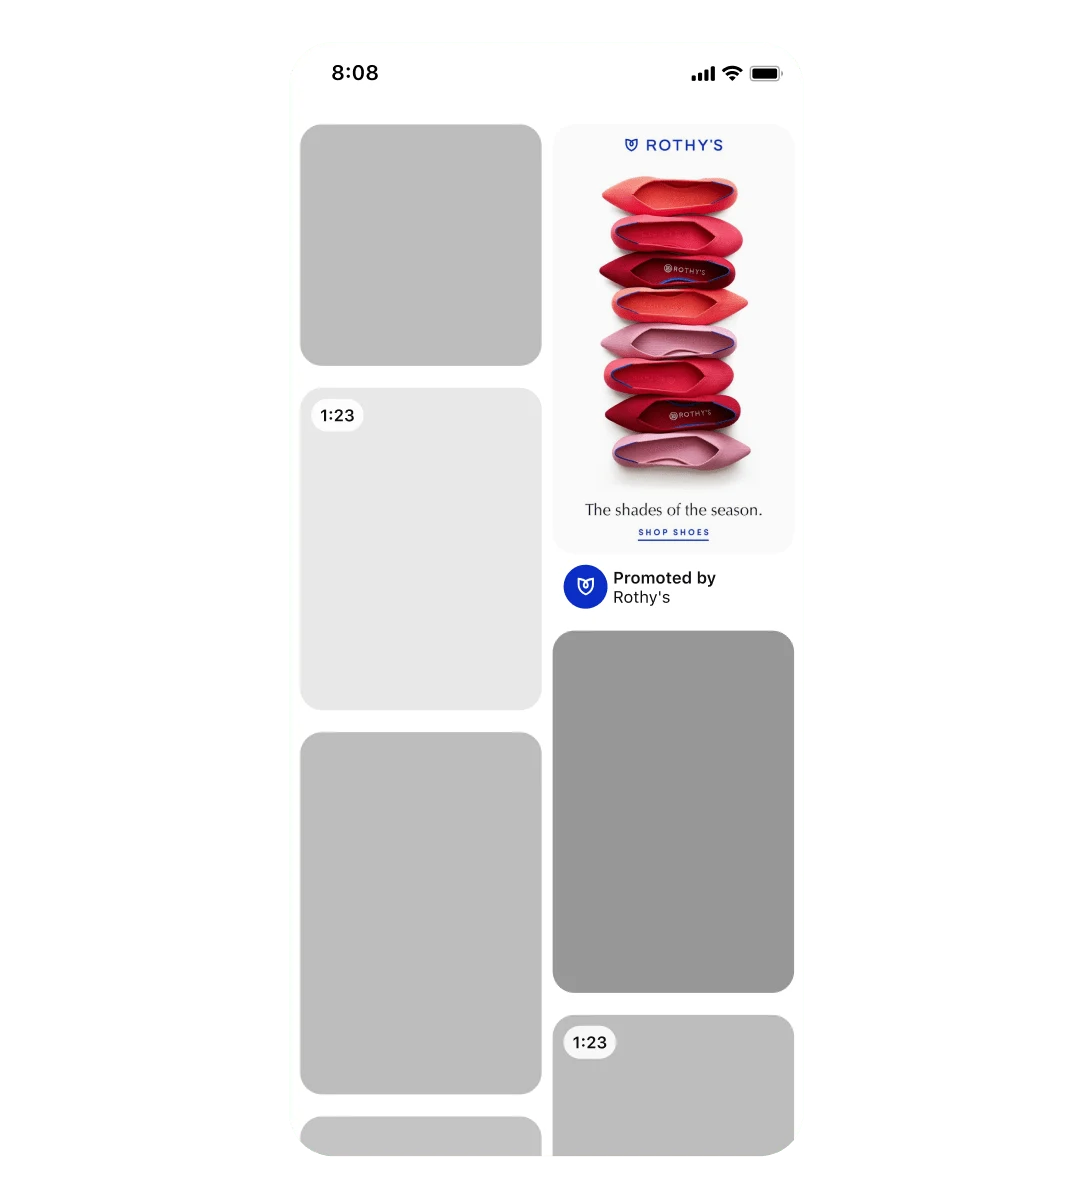 Główny feed w aplikacji Pinterest na urządzeniu mobilnym z reklamą promowaną przez Rothy’s. Reklama to standardowy Pin z obrazkiem płaskich butów w różnych odcieniach czerwieni z napisem pod spodem: „odcienie tej pory roku”.